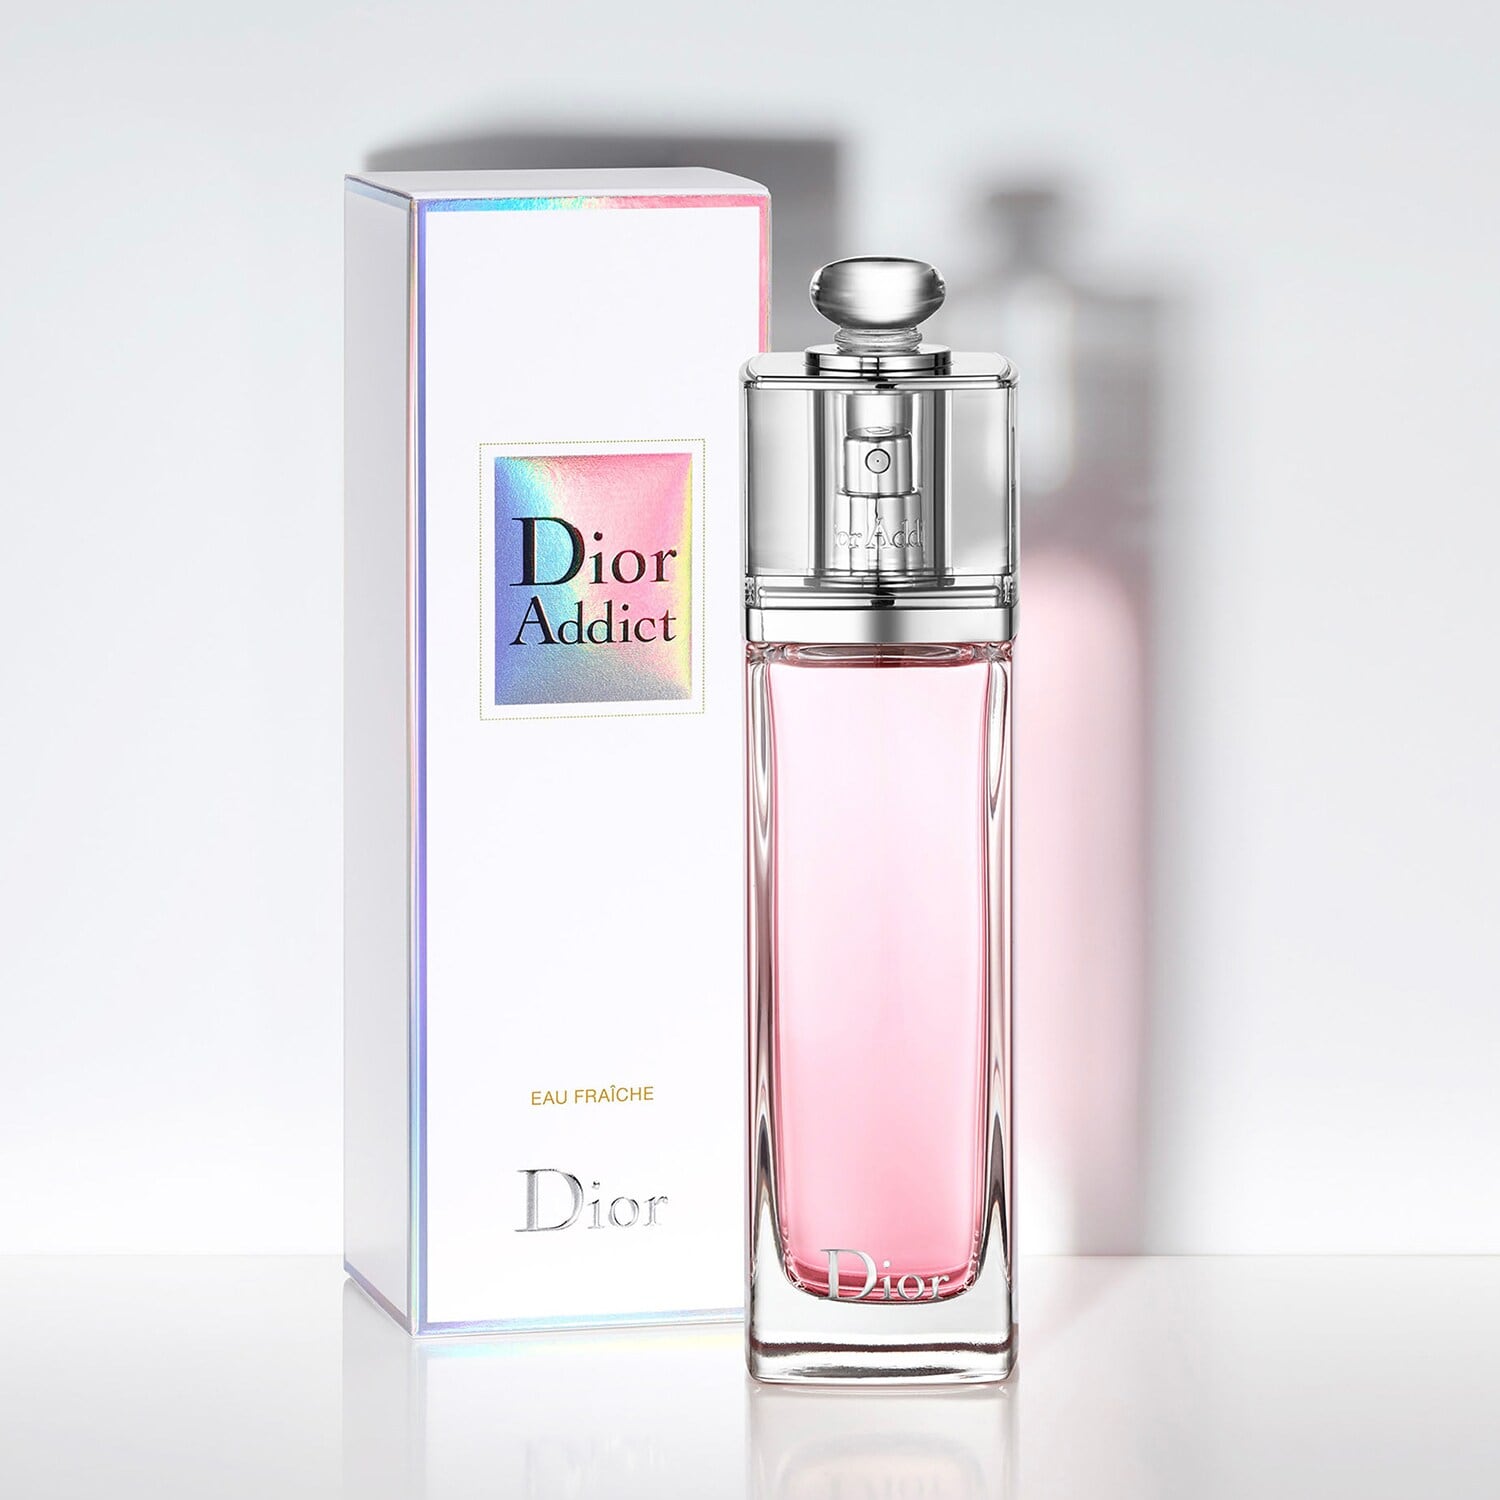 Dior Addict Eau Fraiche EDT | My Perfume Shop Australia